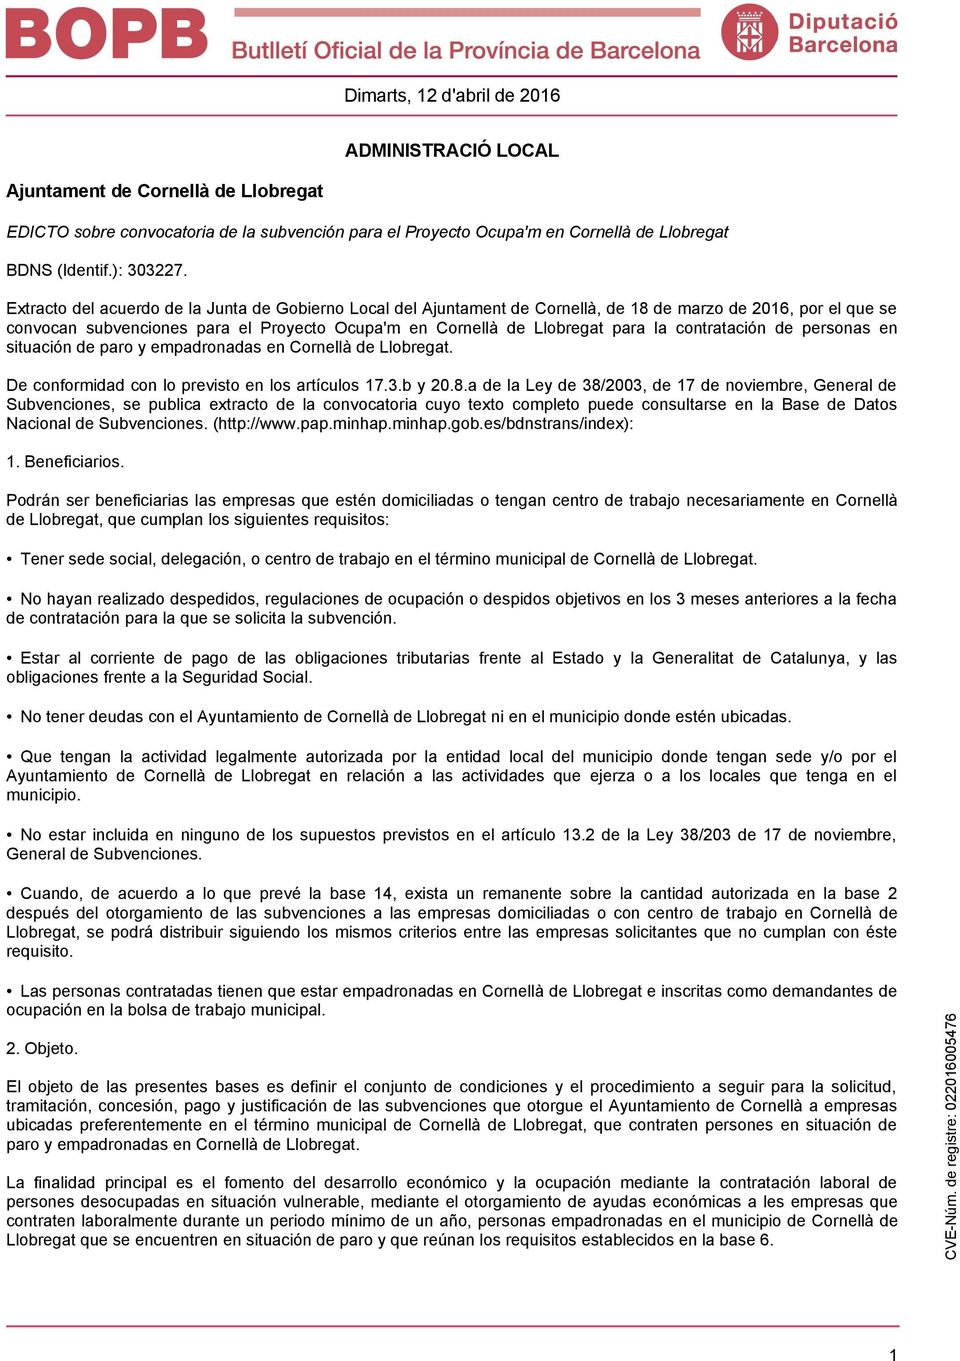 contratación de personas en situación de paro y empadronadas en Cornellà de Llobregat. De conformidad con lo previsto en los artículos 17.3.b y 20.8.